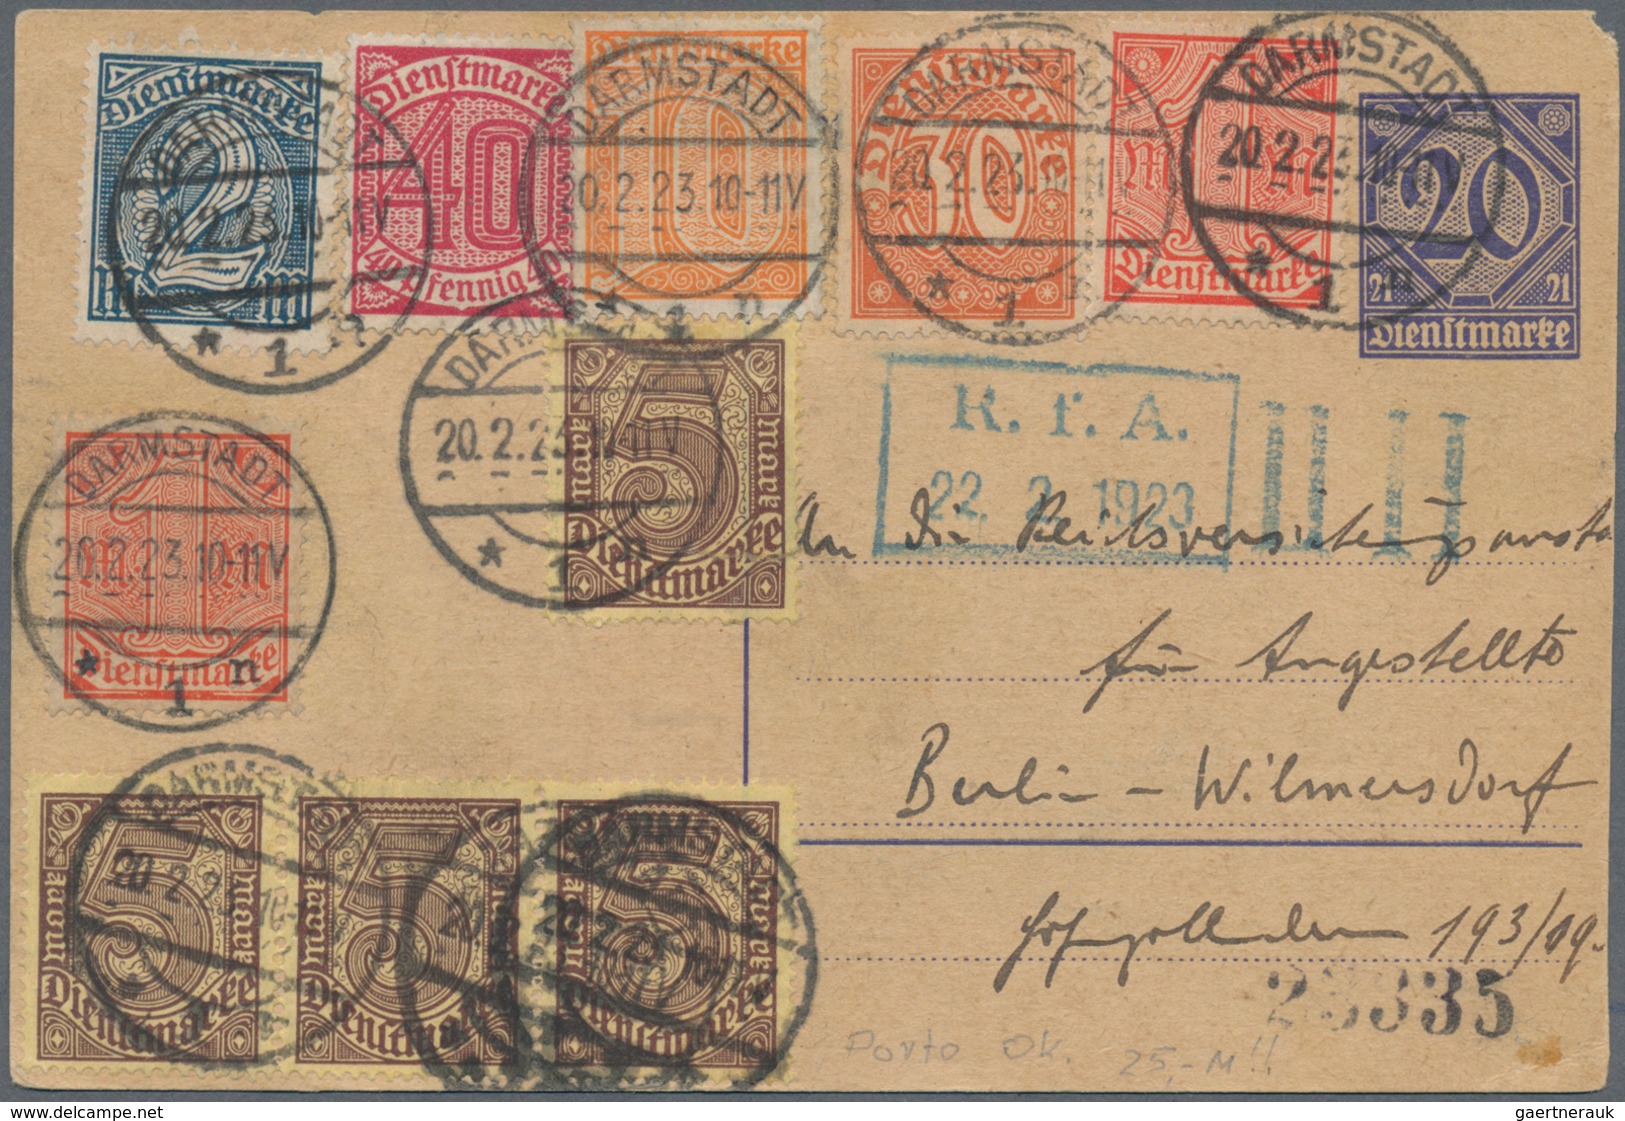 Deutsches Reich - Dienstmarken: 1921, 10 Pf In Neuer Farbe Orange Mit Anderen Dienstmarken Portorich - Officials